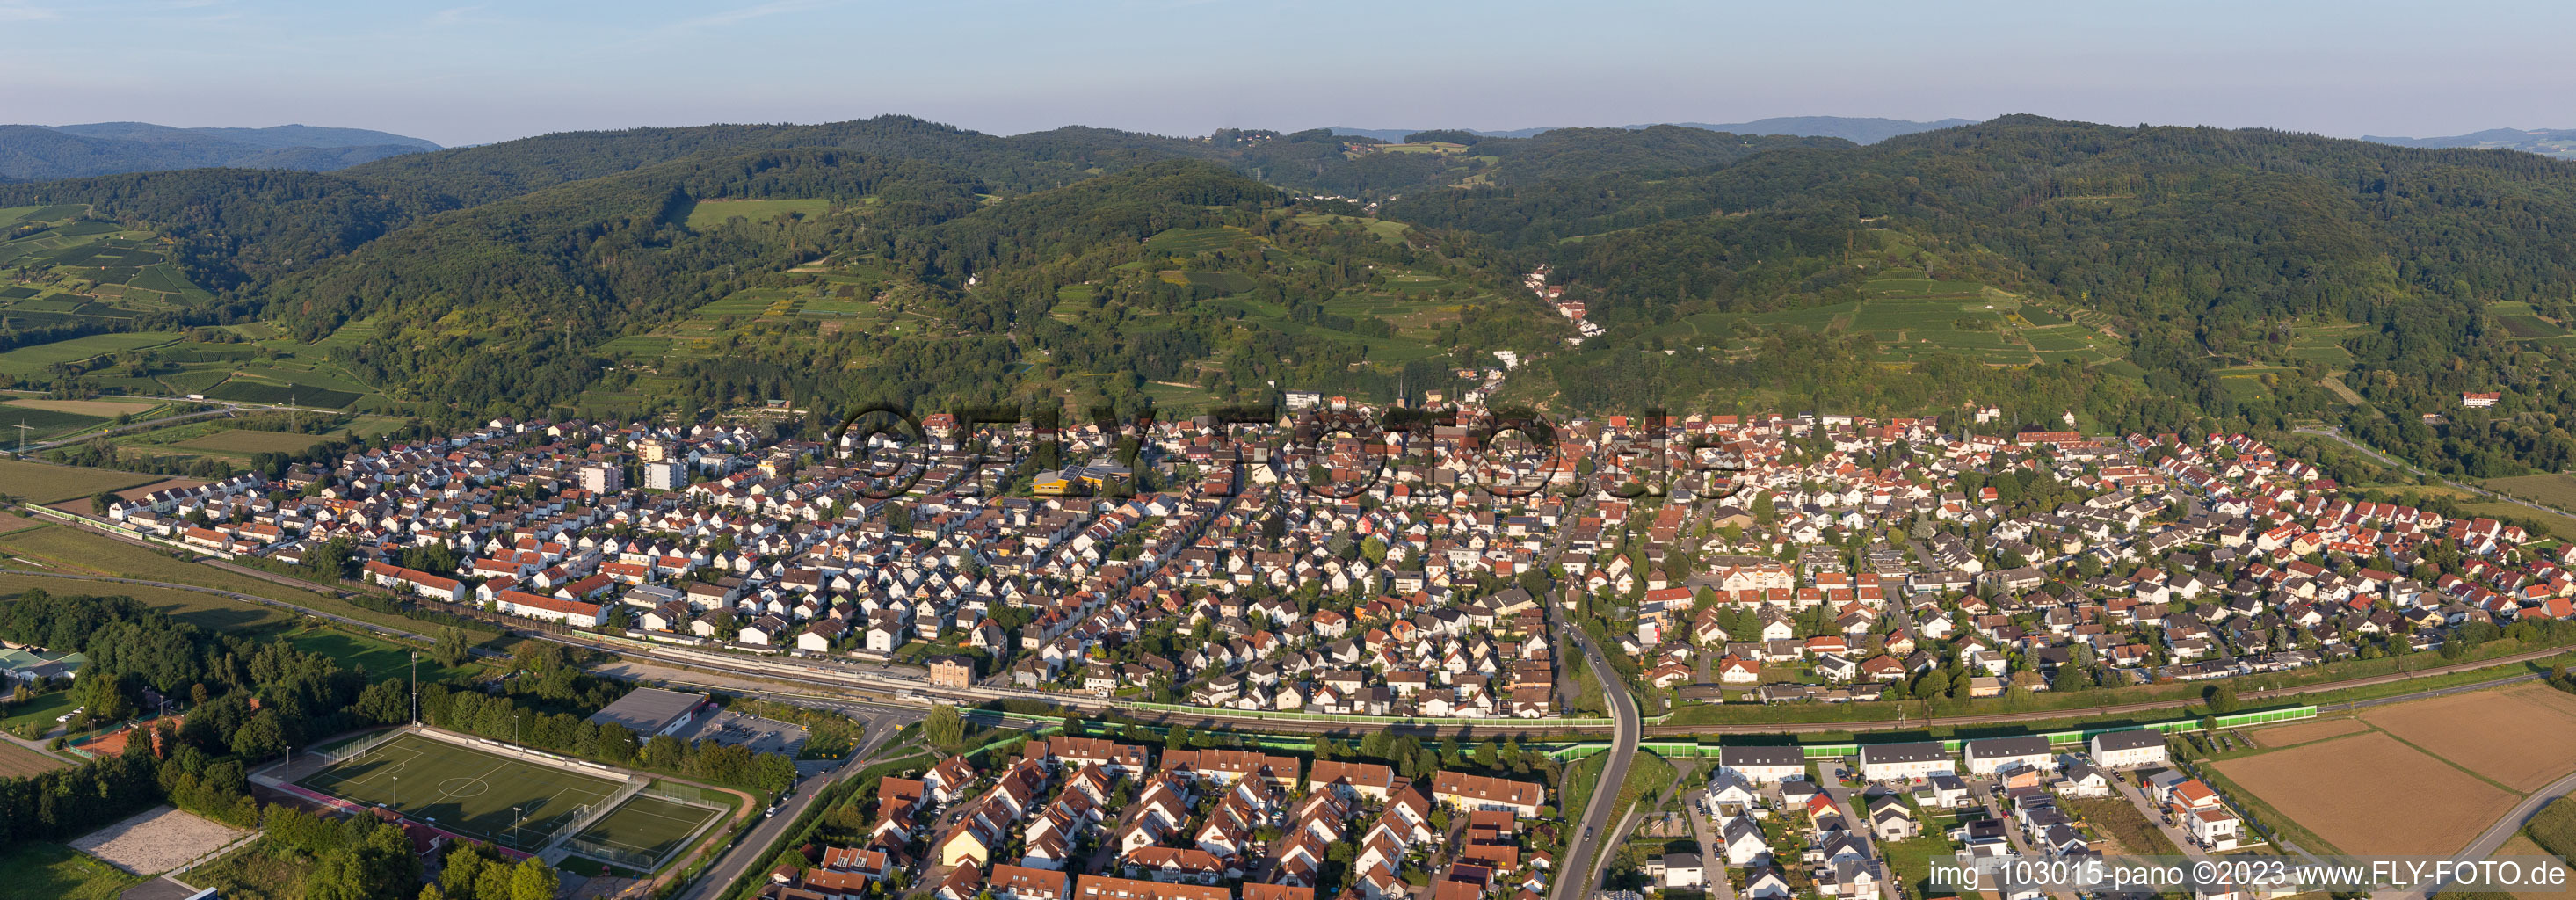 Laudenbach im Bundesland Baden-Württemberg, Deutschland von der Drohne aus gesehen